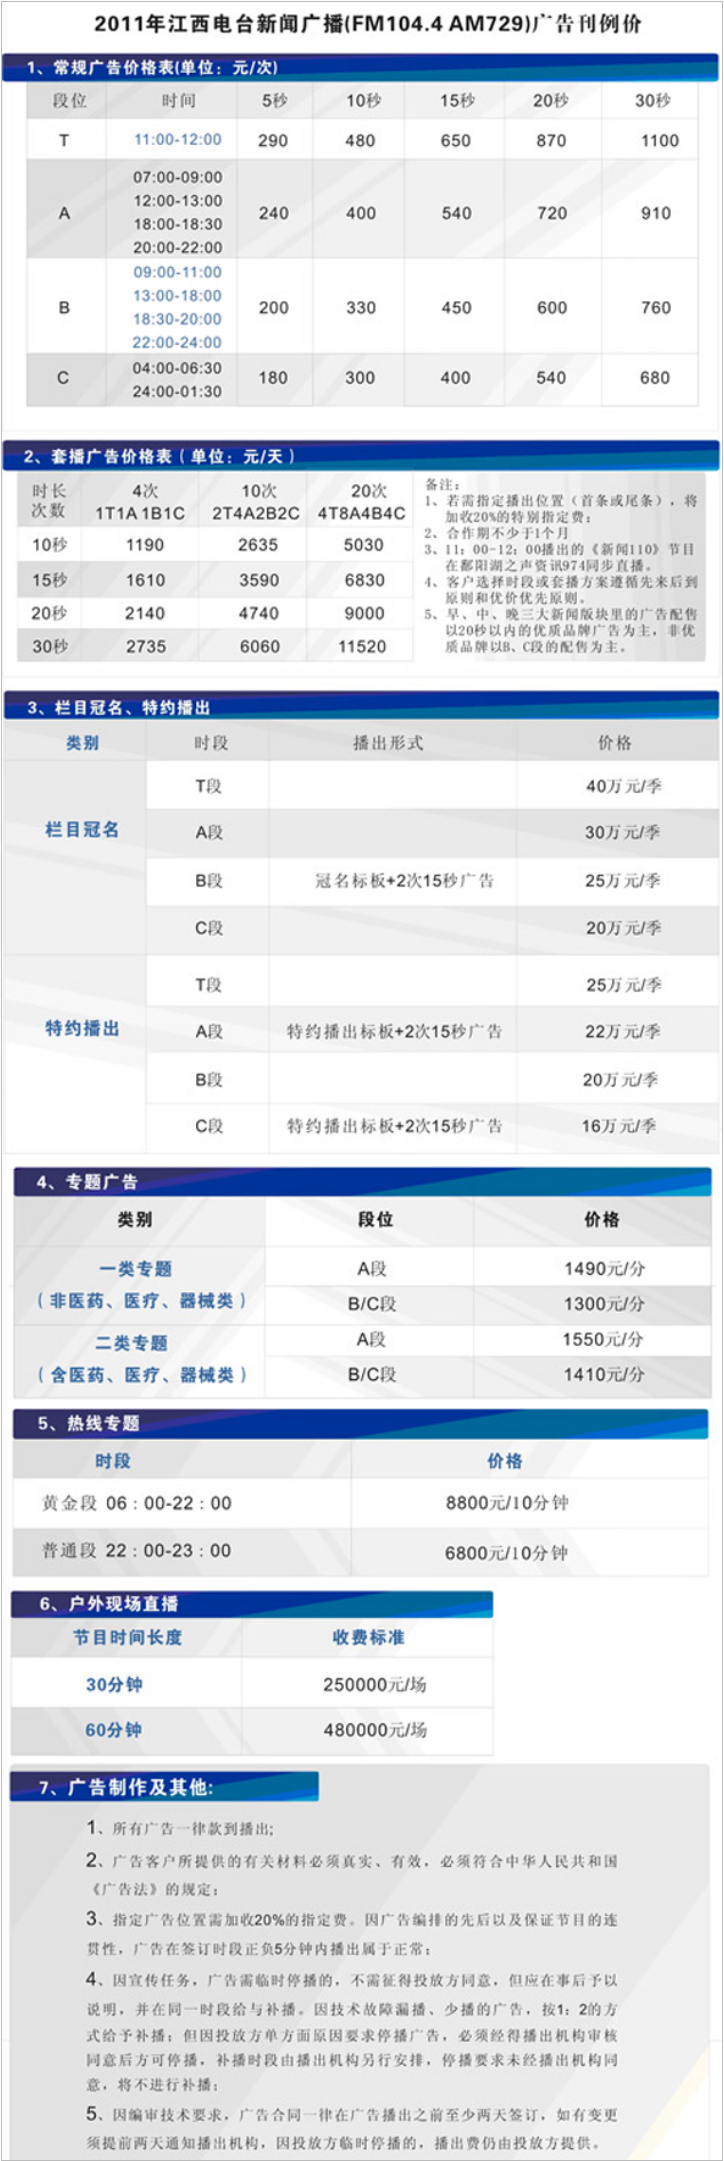 2011江西人民广播电台新闻综合频率 AM729,FM104.4广告报价表.png